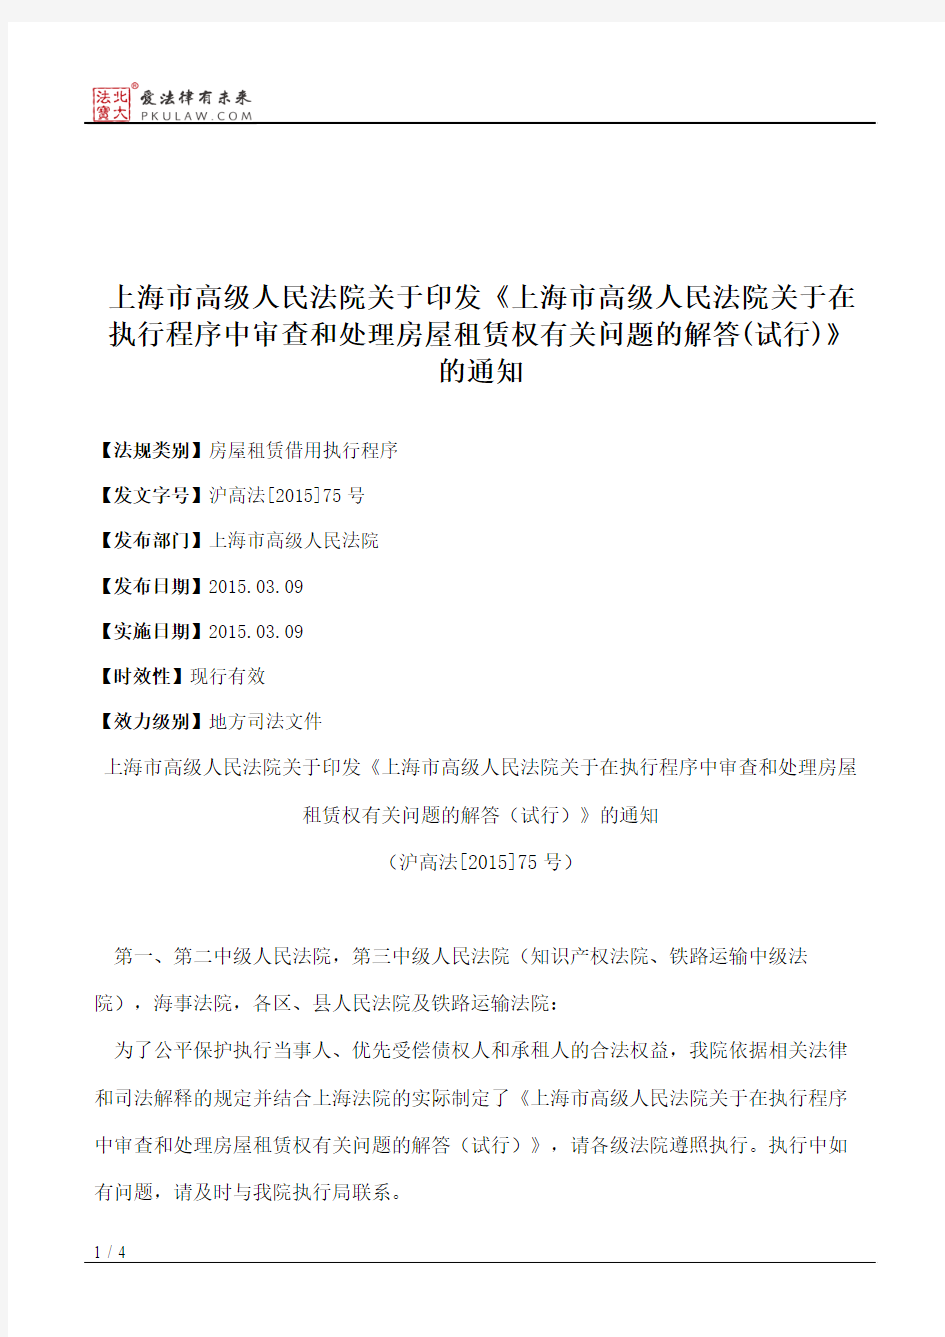 上海市高级人民法院关于印发《上海市高级人民法院关于在执行程序